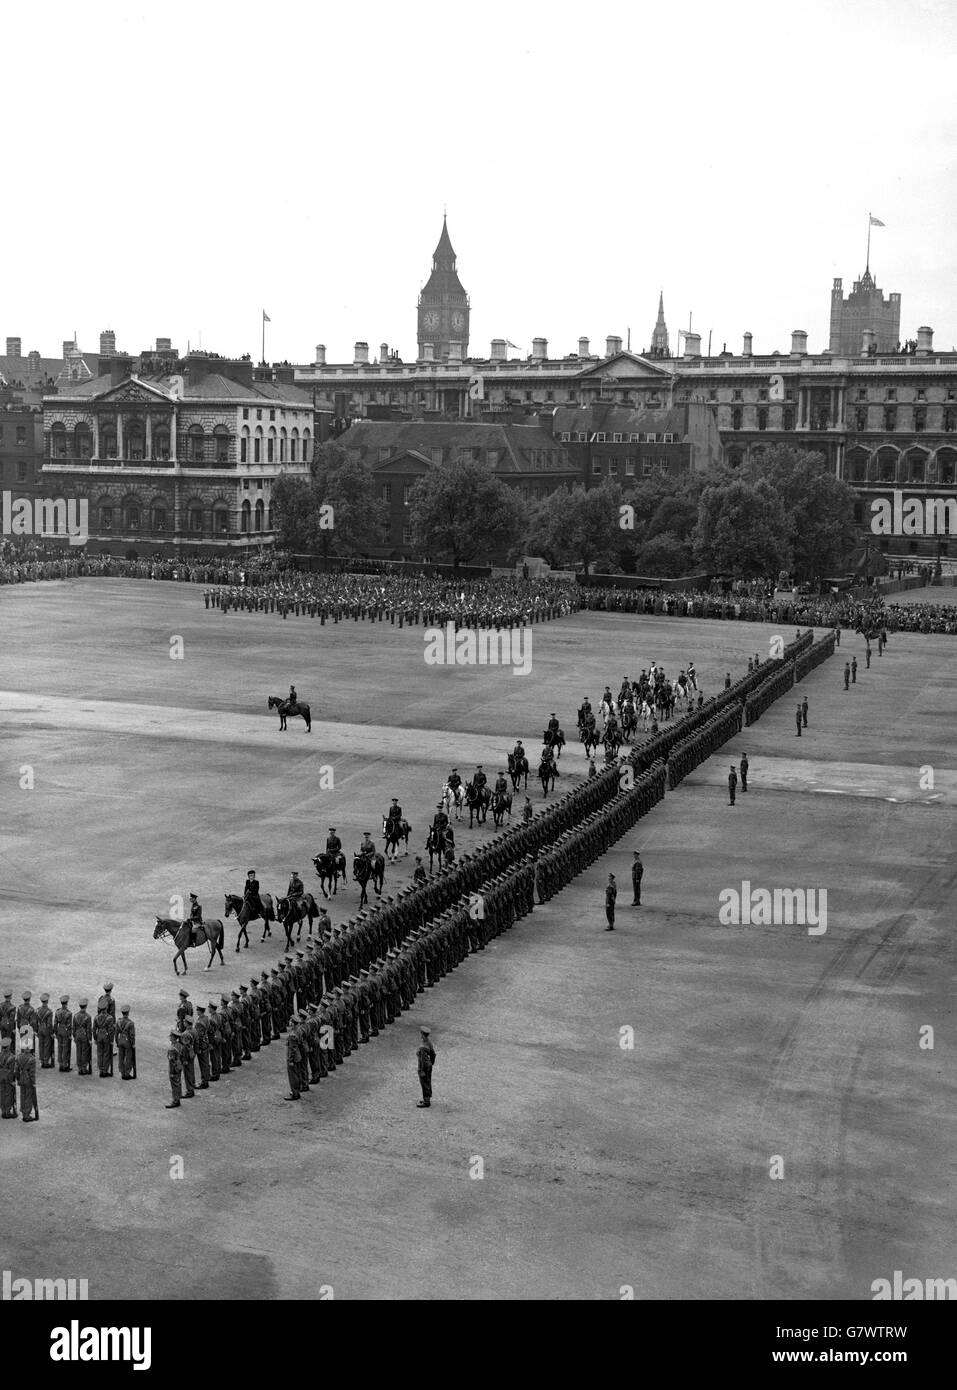 Vue générale de Horse Guards Parade où le roi inspectait les gardes avec le duc de Gloucester.La princesse Elizabeth a également assisté à son premier Trooping de la couleur depuis qu'elle a été faite colonel des Grenadier Guards. Banque D'Images